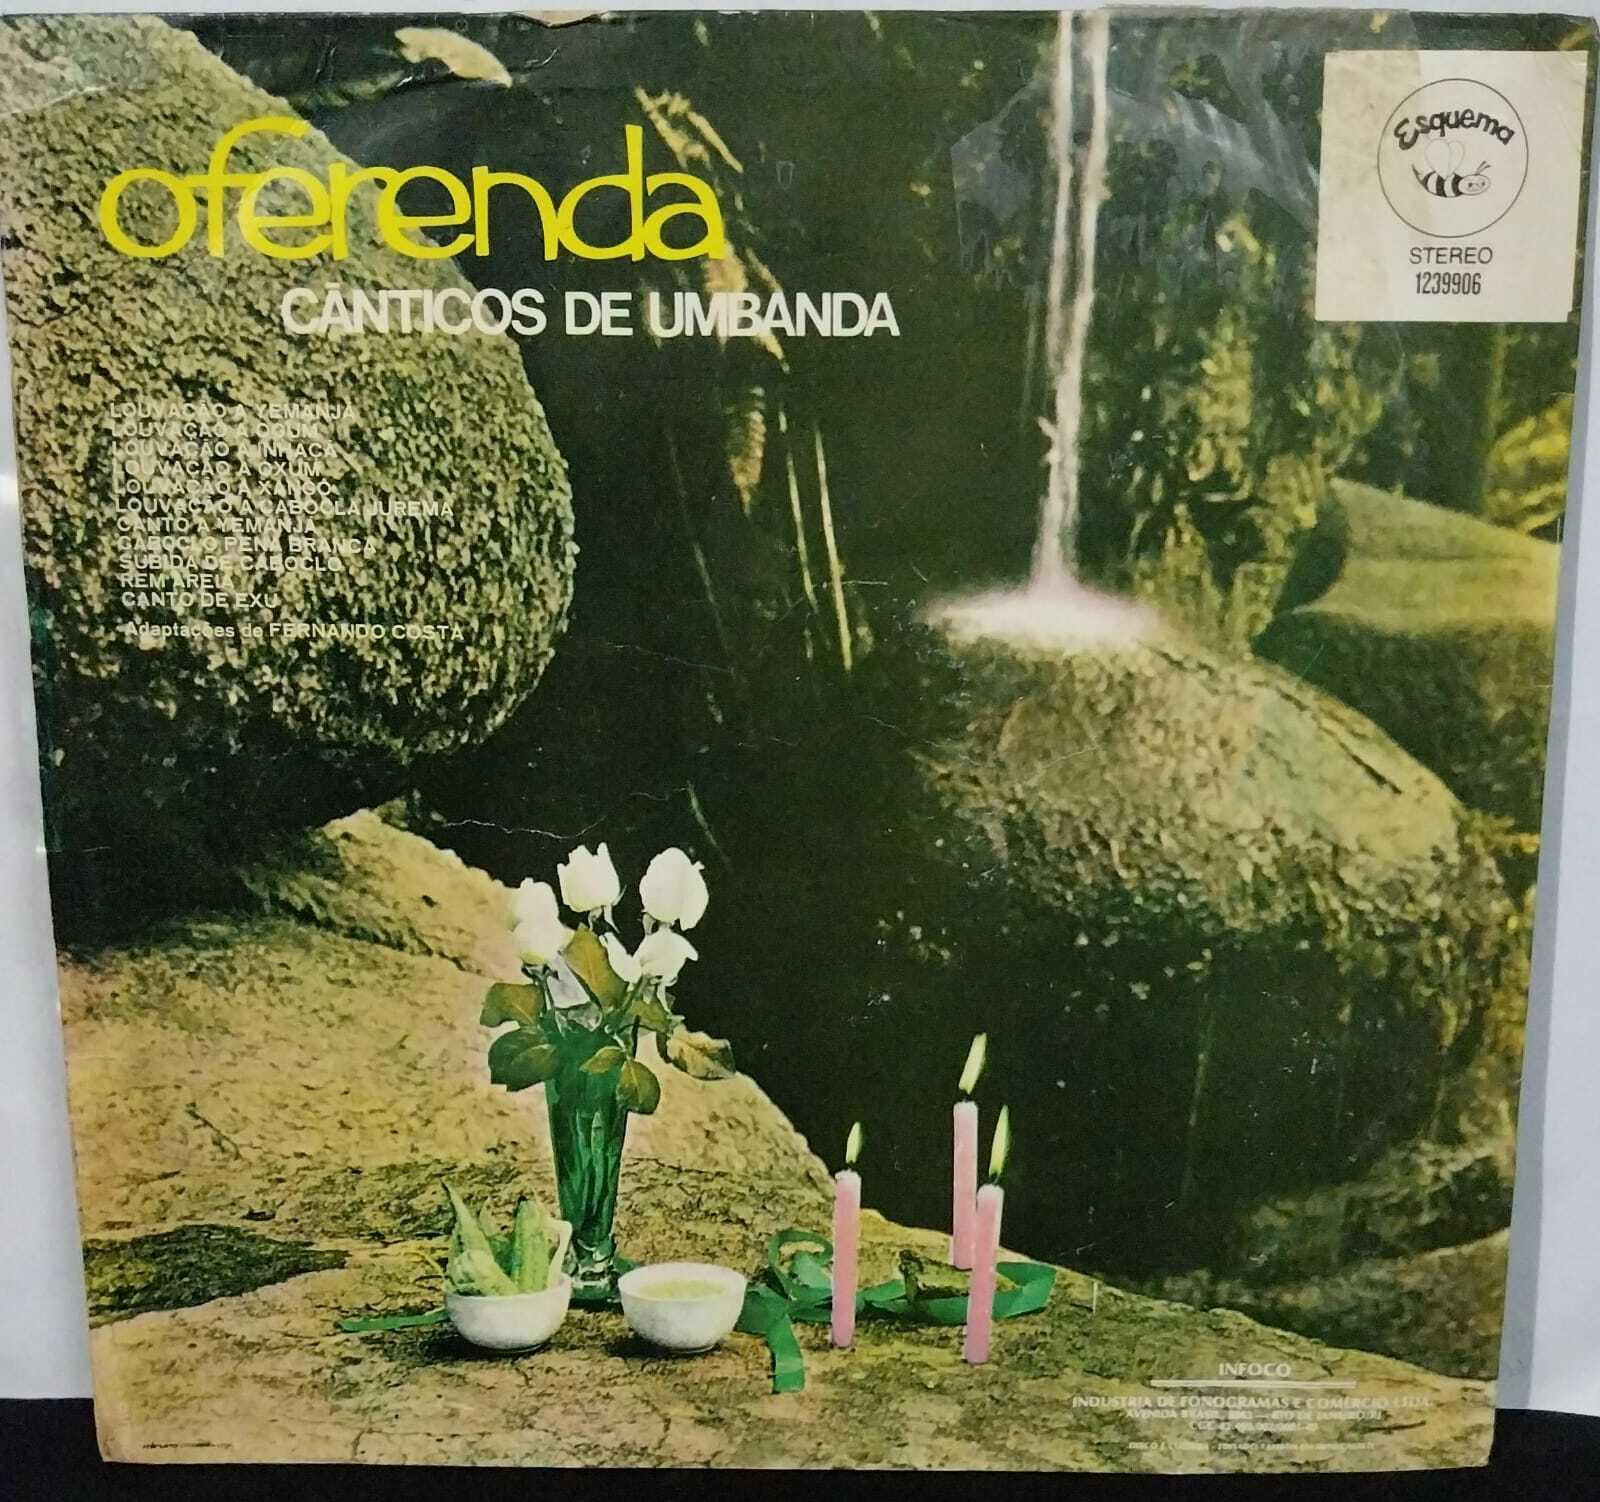 Vinil - Fernando Costa - Oferenda - Cânticos de Umbanda